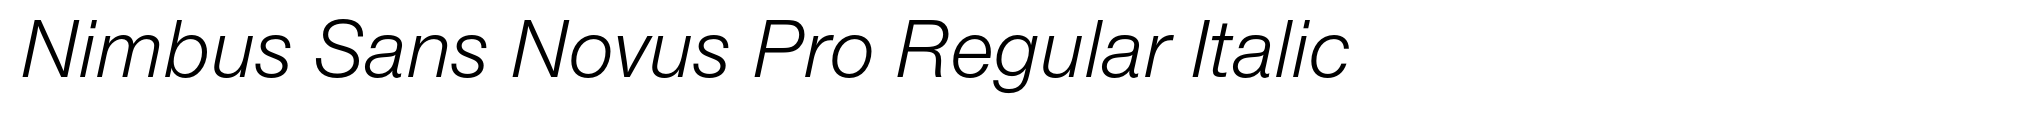 Nimbus Sans Novus Pro Regular Italic image